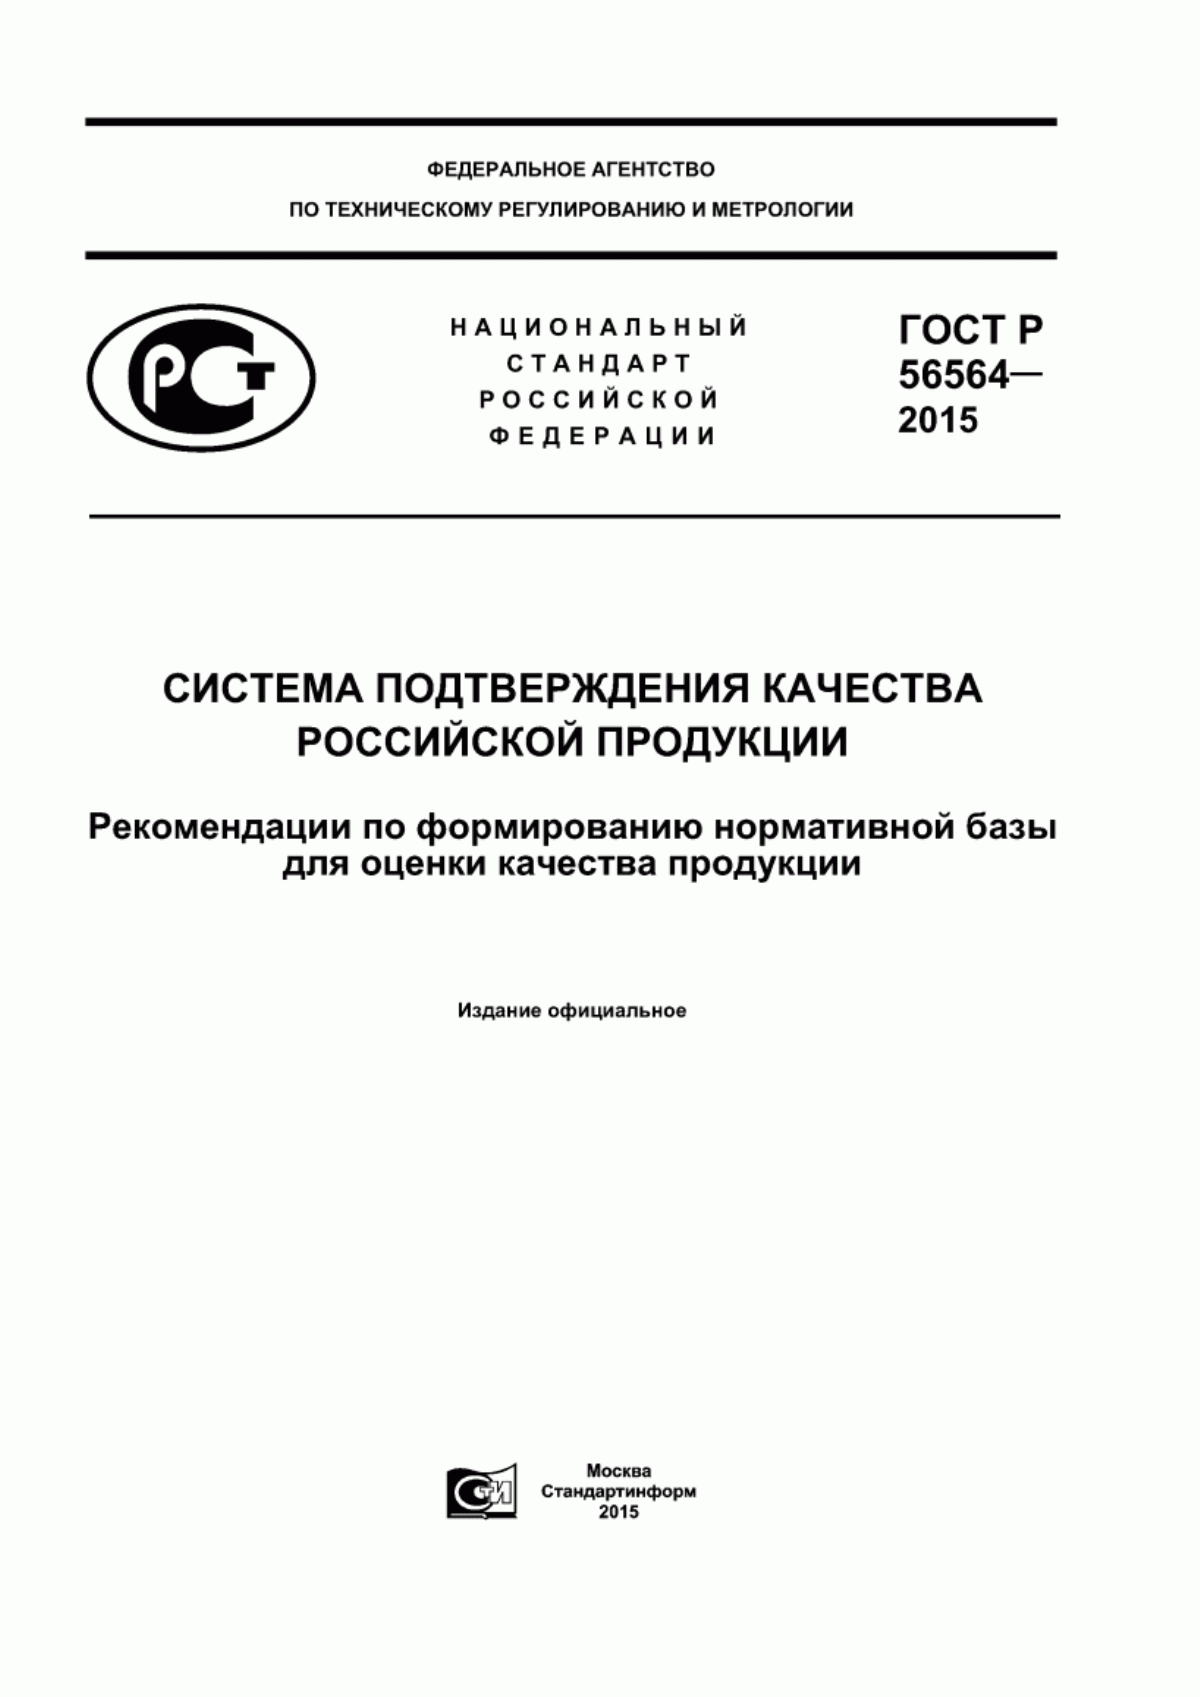 ГОСТ Р 56564-2015 Система подтверждения качества российской продукции. Рекомендации по формированию нормативной базы для оценки качества продукции